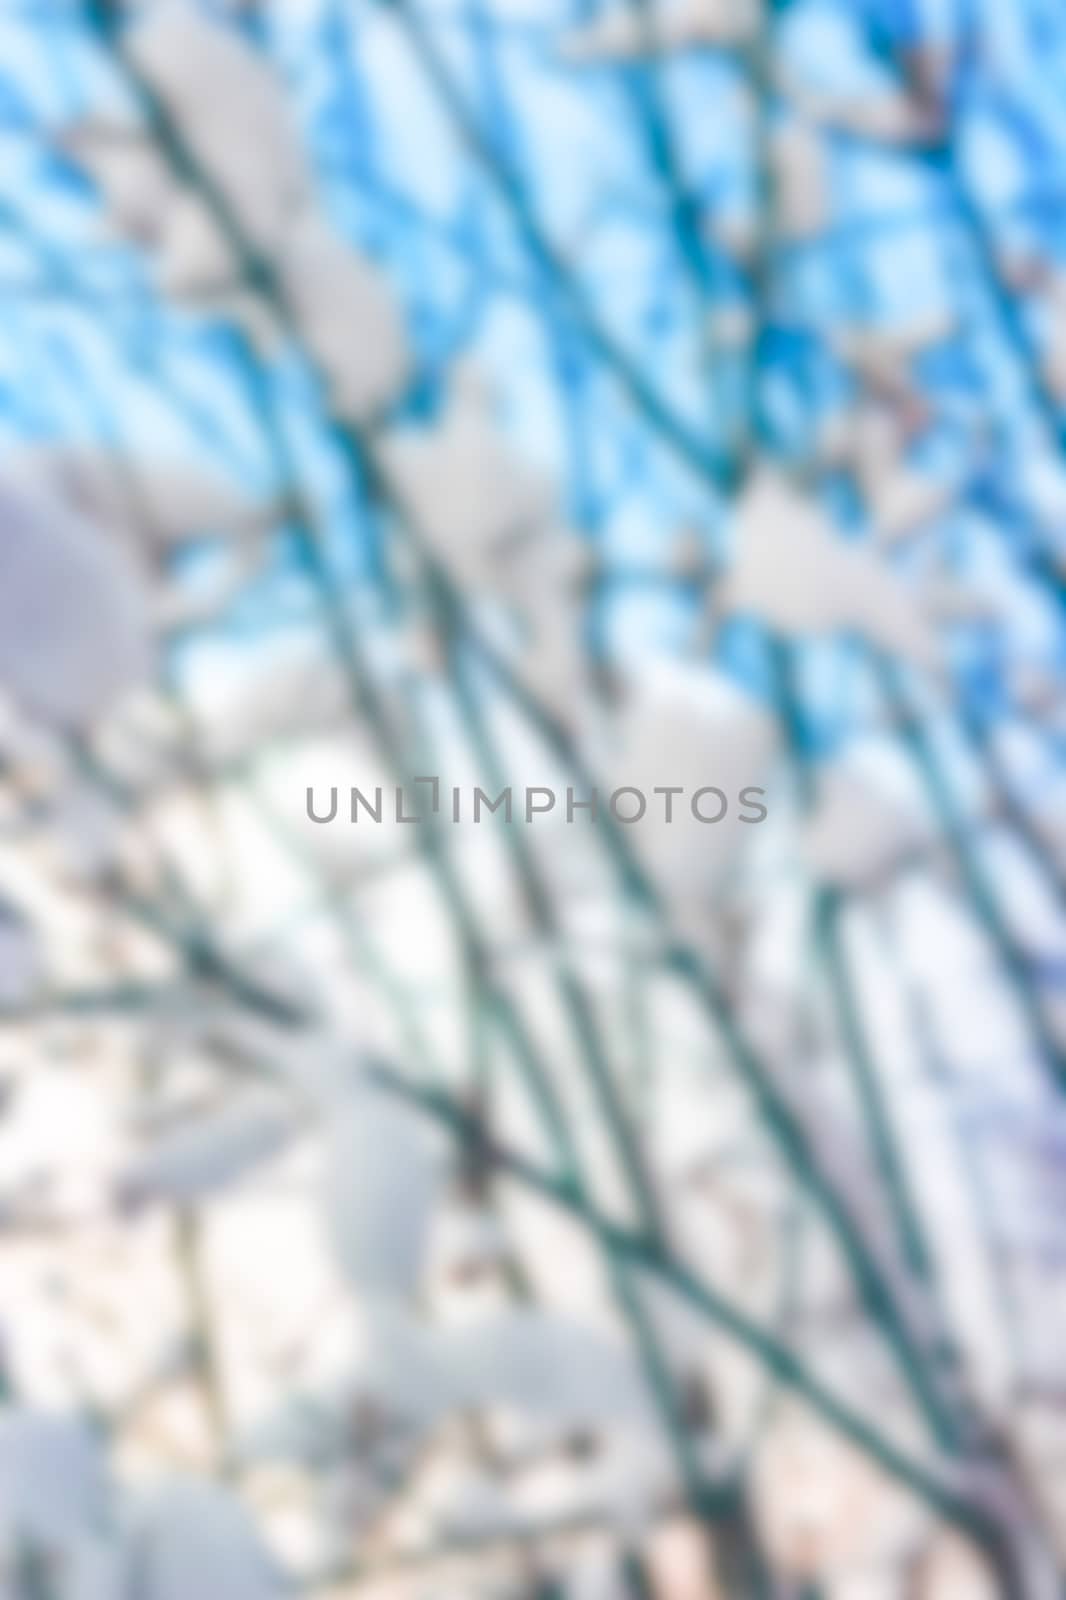 Winter landscape - blurred image by sengnsp